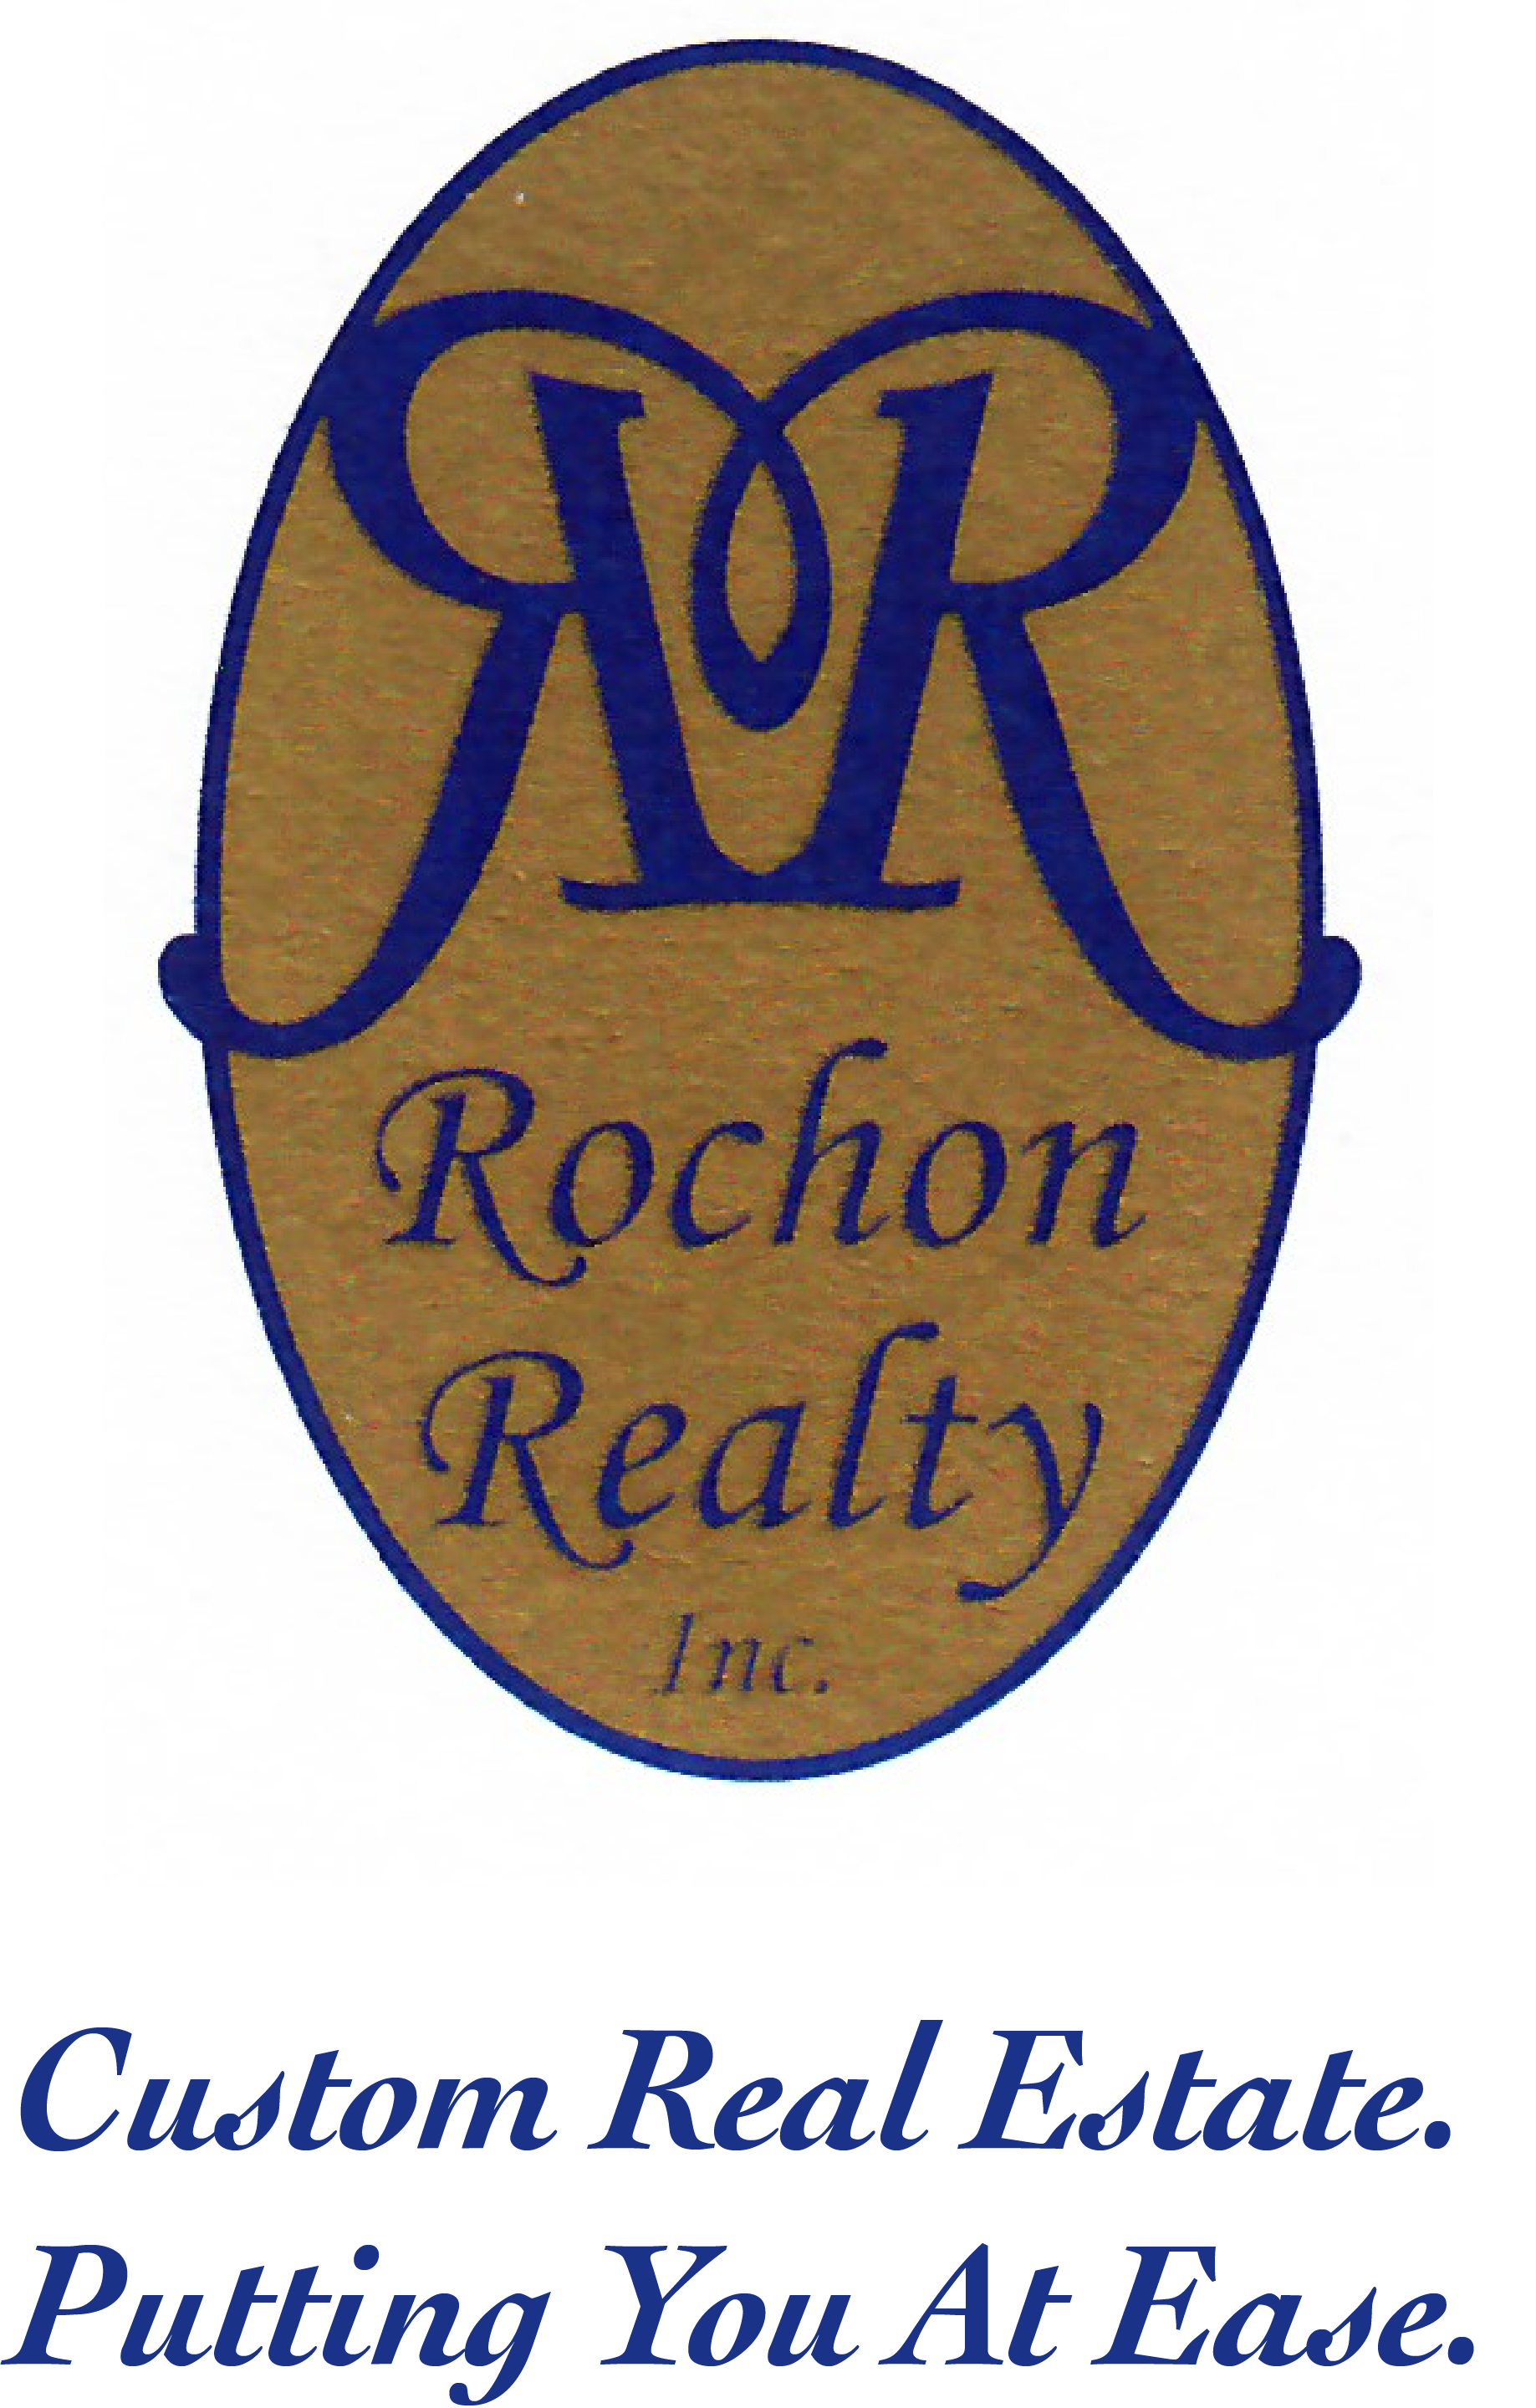 Rochon Realty, Inc.